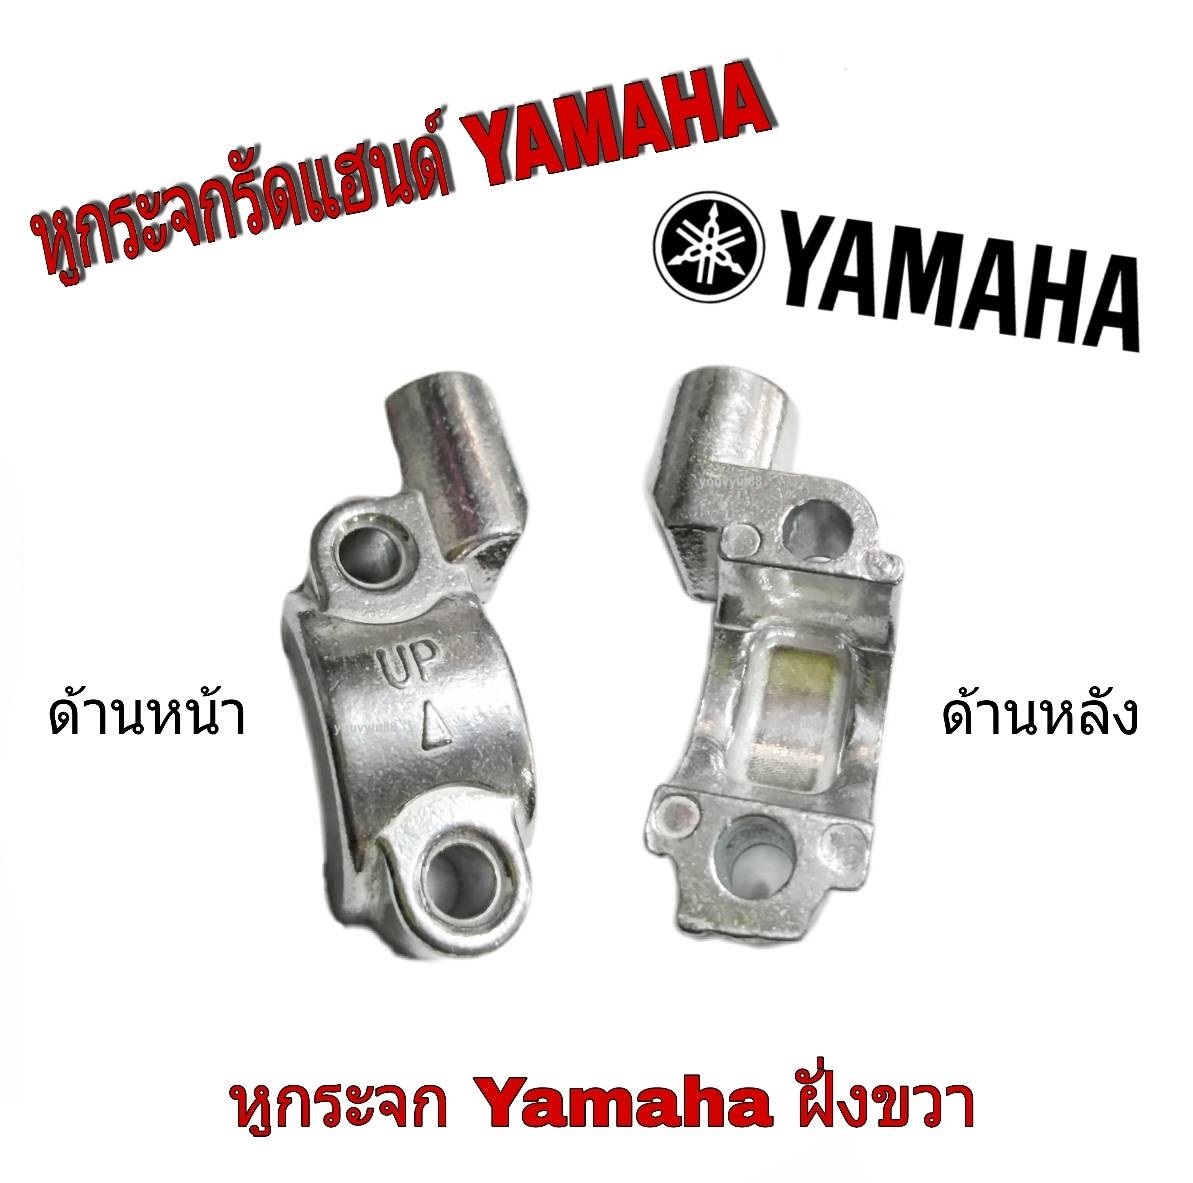 หูกระจกเดิม Yamaha ทุกรุ่น ยามาฮ่า ใส่ได้เลยไม่ต้องดัดแปลง ราคาต่อตัว นะค่ะหูกระจกเดิม ยามาฮ่าทุกรุ่น